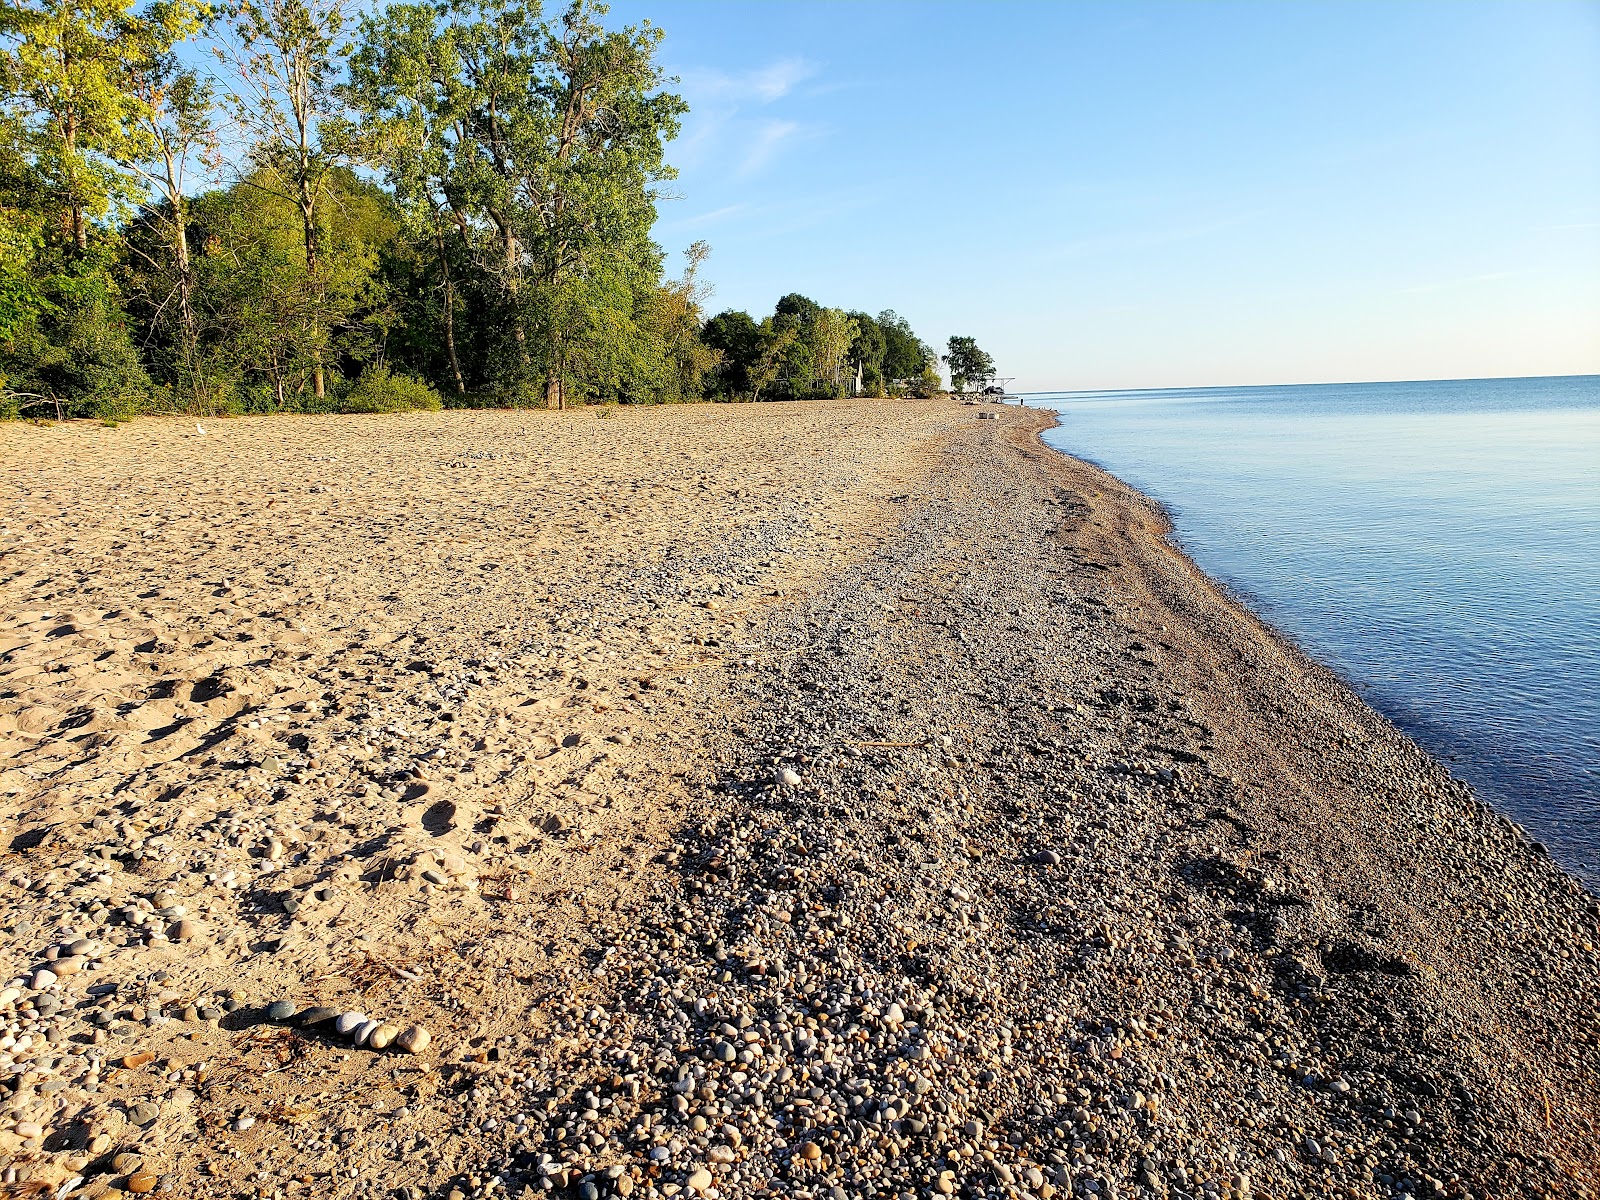 Photo de Lakeport State Beach - endroit populaire parmi les connaisseurs de la détente